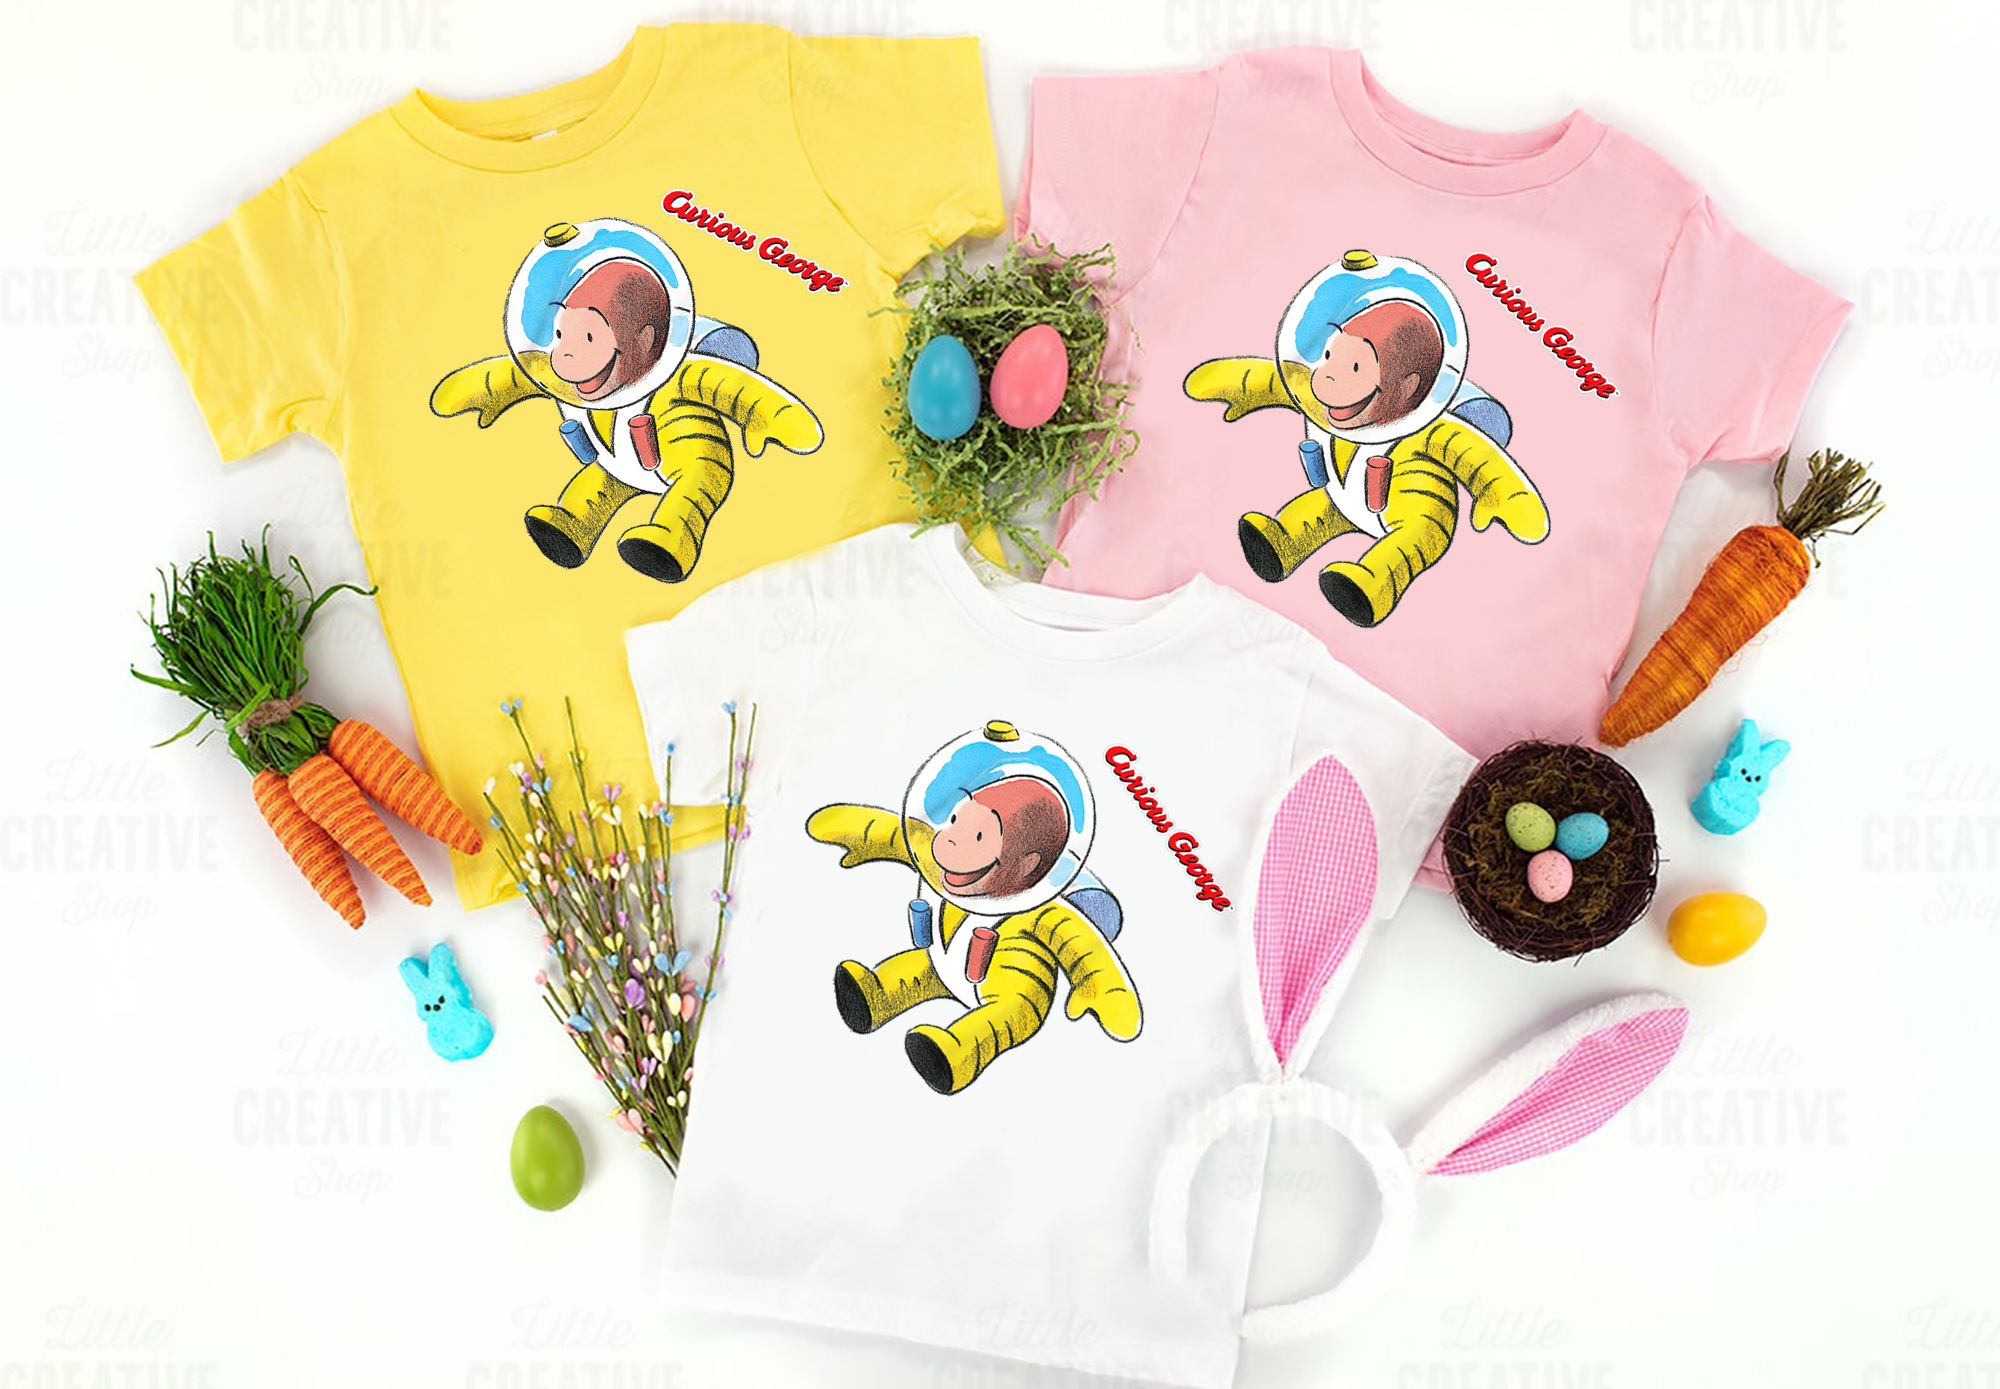 Curious George Happy Astronaut Portrait T-Shirt, Curious George Kids T-Shirt, Curious George Birthday Shirt